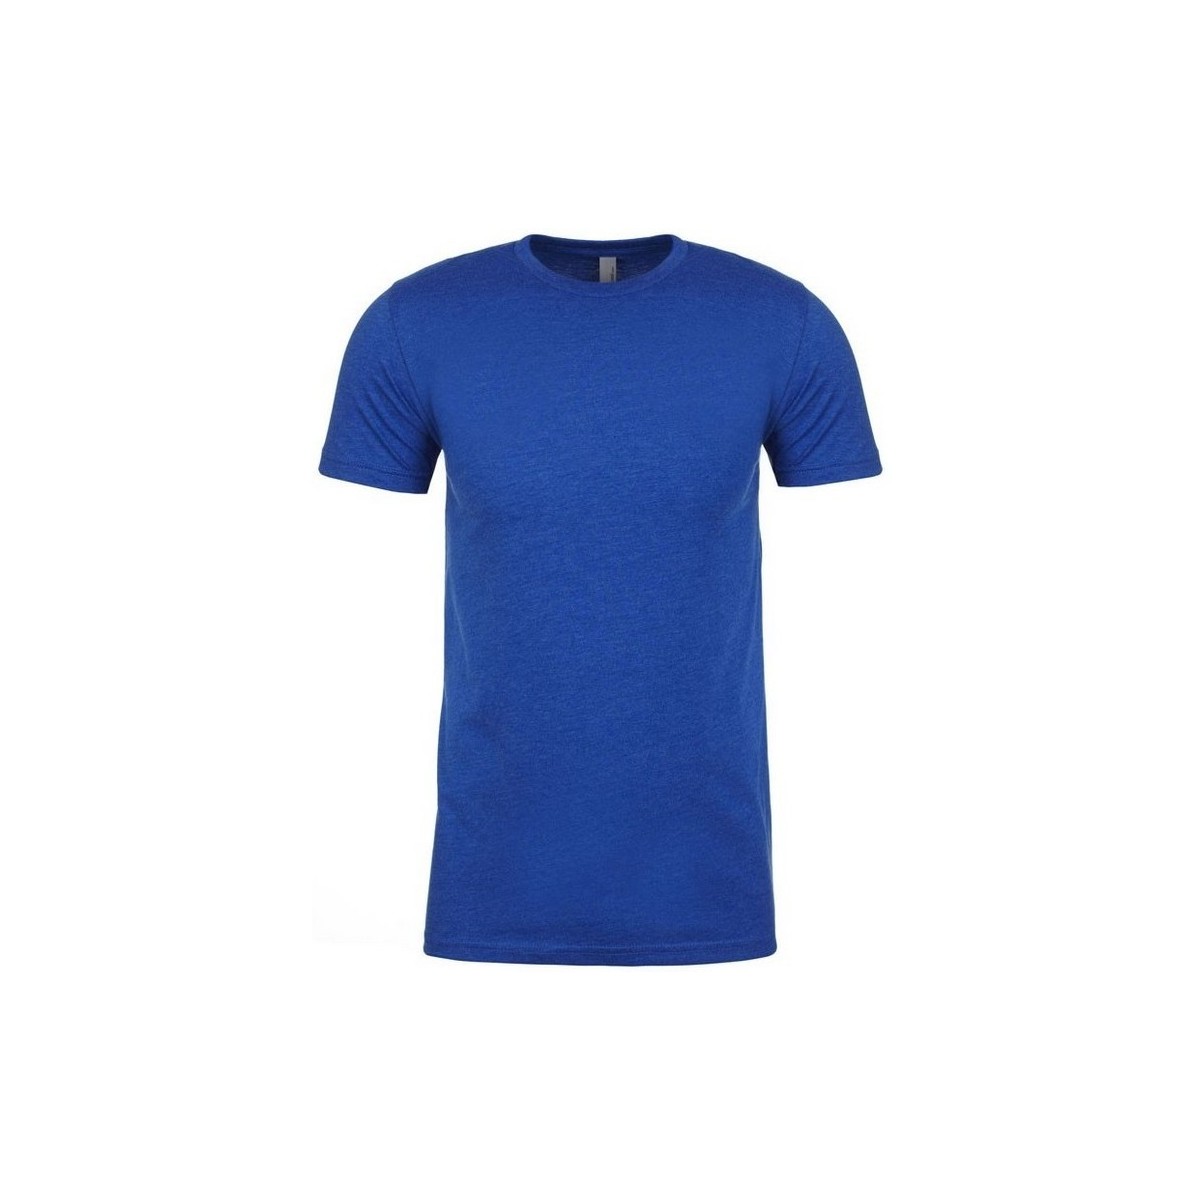 Vêtements T-shirts manches longues Next Level CVC Bleu